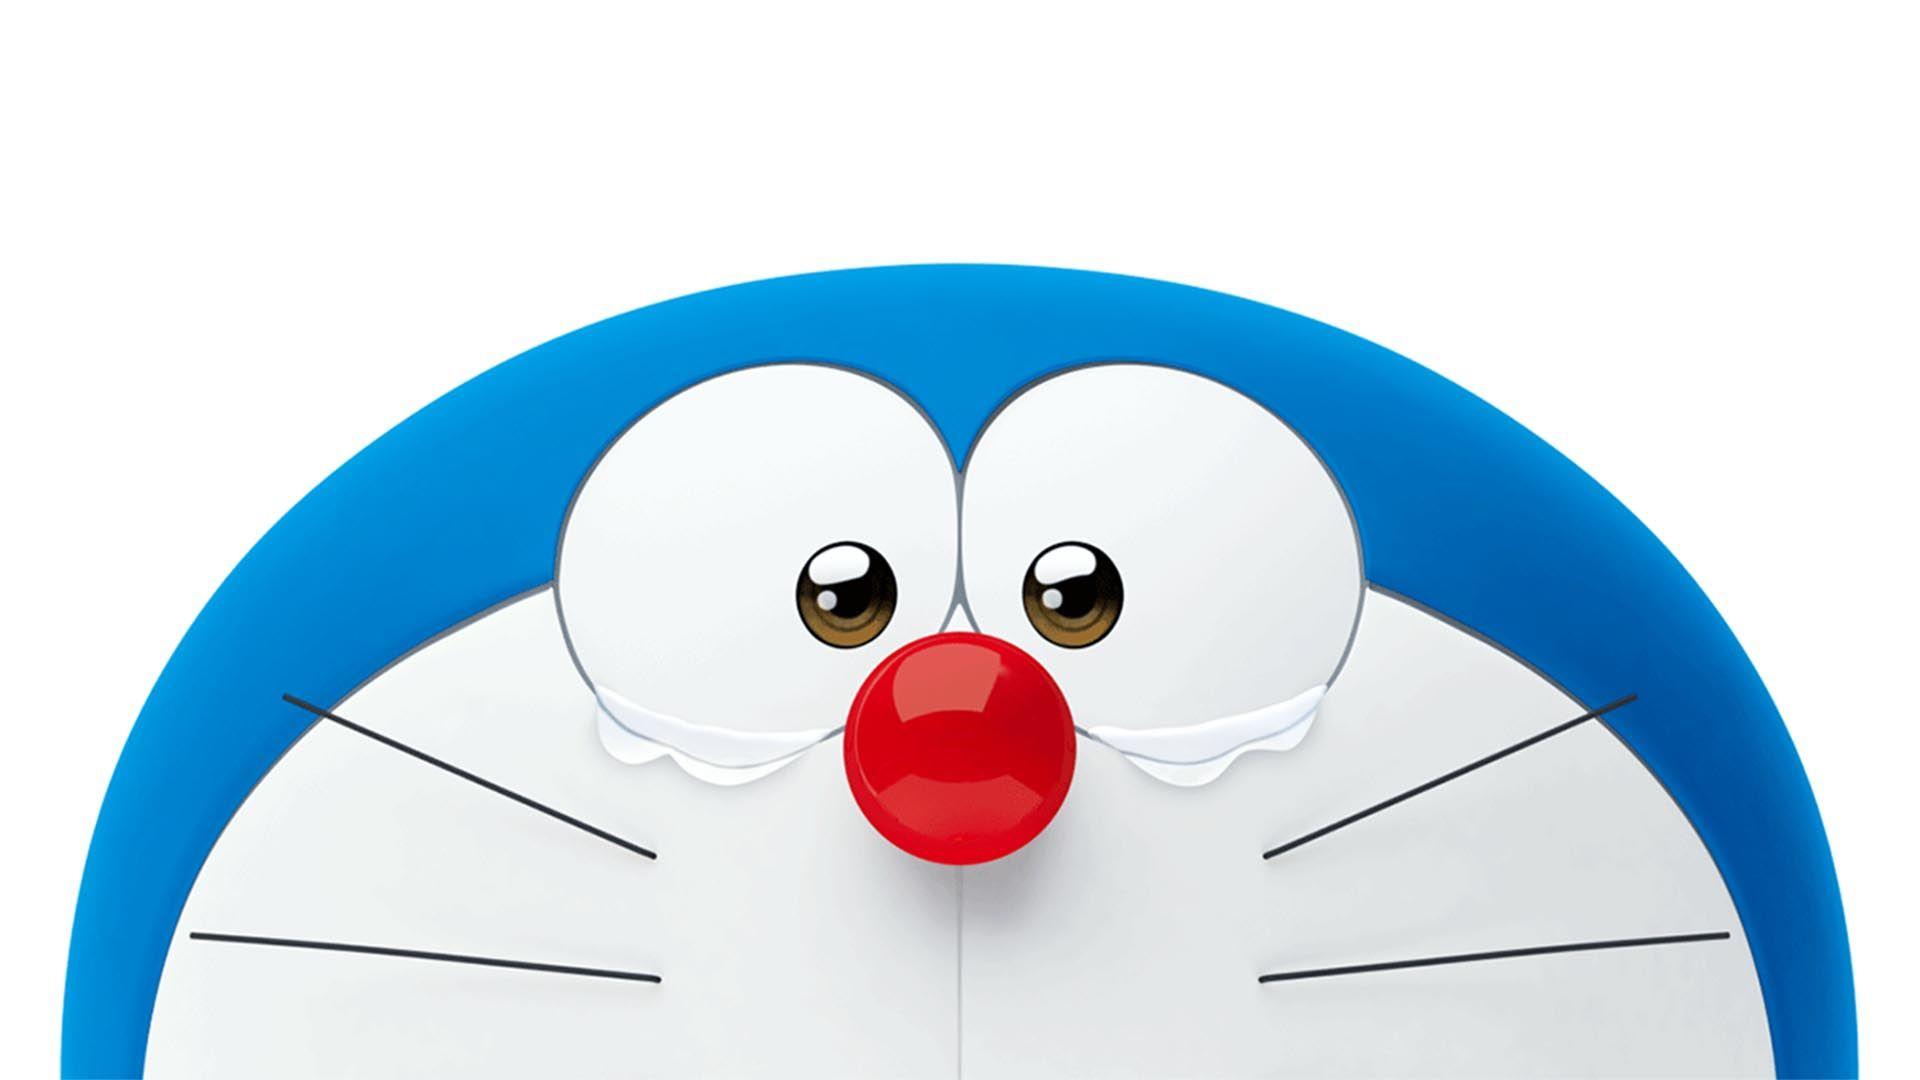 Doraemon PC Wallpapers - Top Free Doraemon PC Backgrounds ...